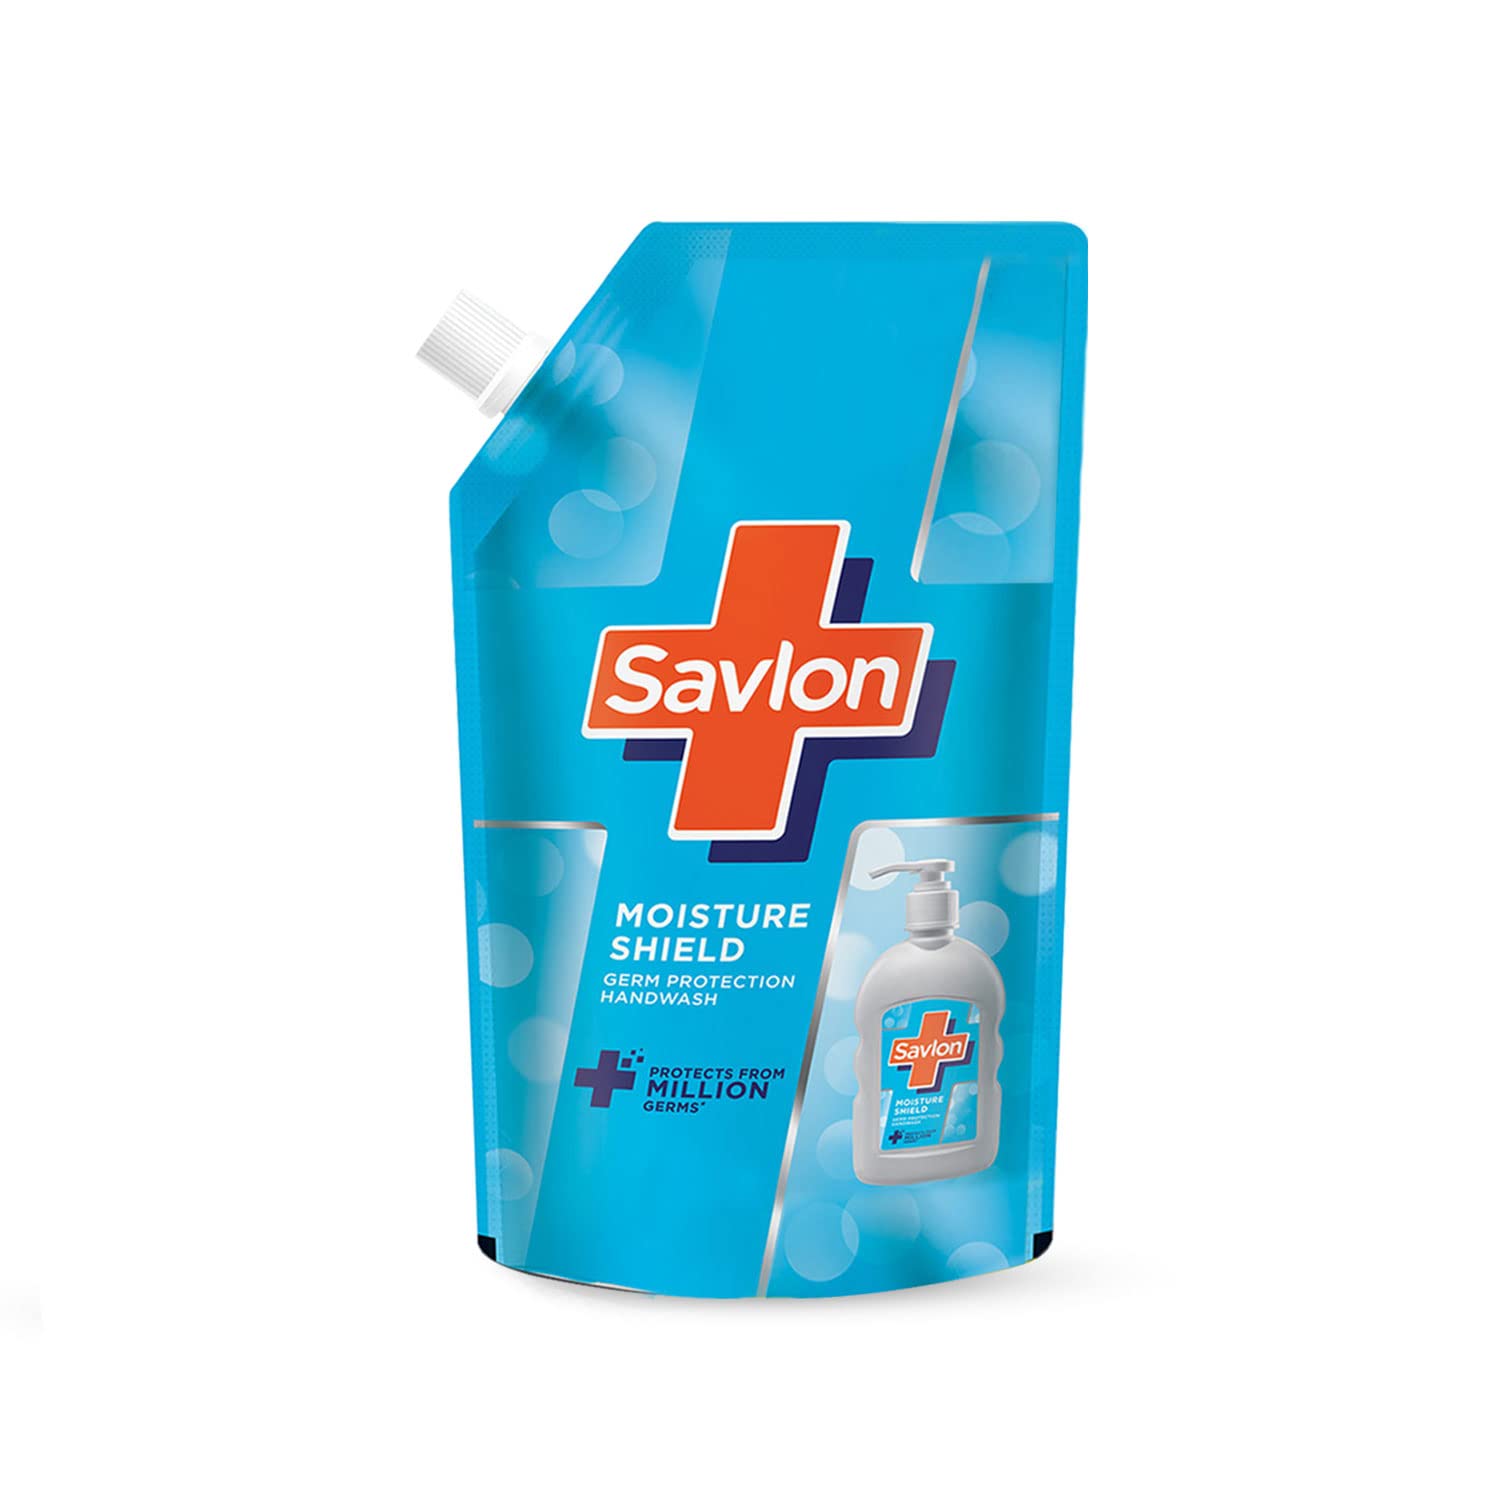 Savlon Deep Clean 750g